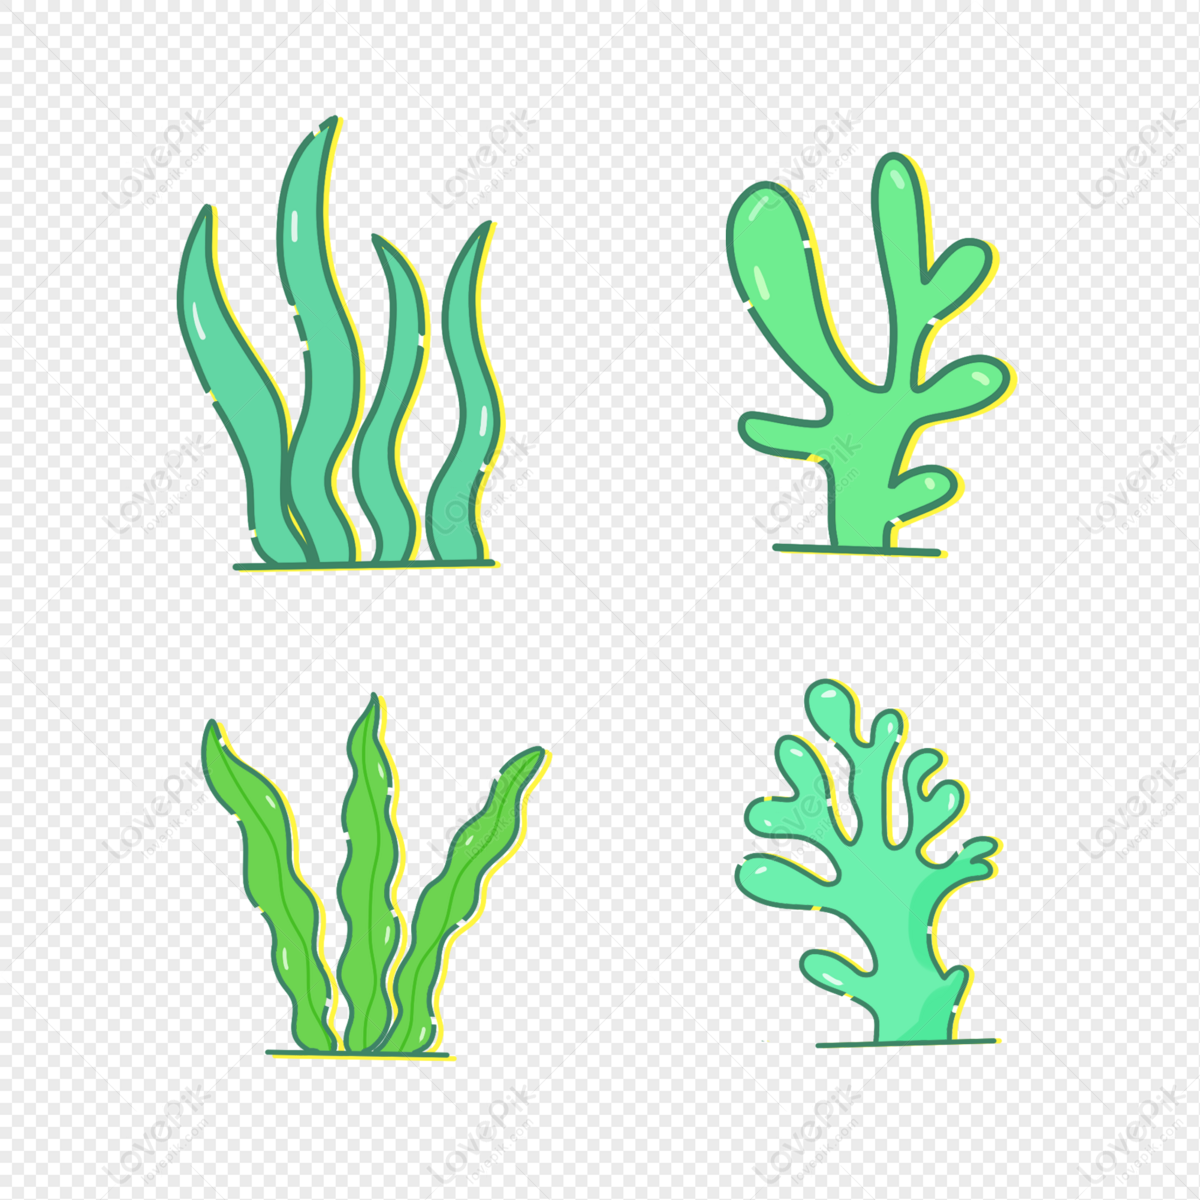 Seaweed Green - màu xanh rong biển - đem lại cho bạn sự thư giãn và êm dịu. Hãy ngắm nhìn những hình ảnh rong biển tuyệt đẹp được chuyển đổi thành các clipart PNG chân thực và đa dạng. Hãy tận hưởng và thưởng thức những giây phút thư giãn với những hình ảnh độc đáo này.